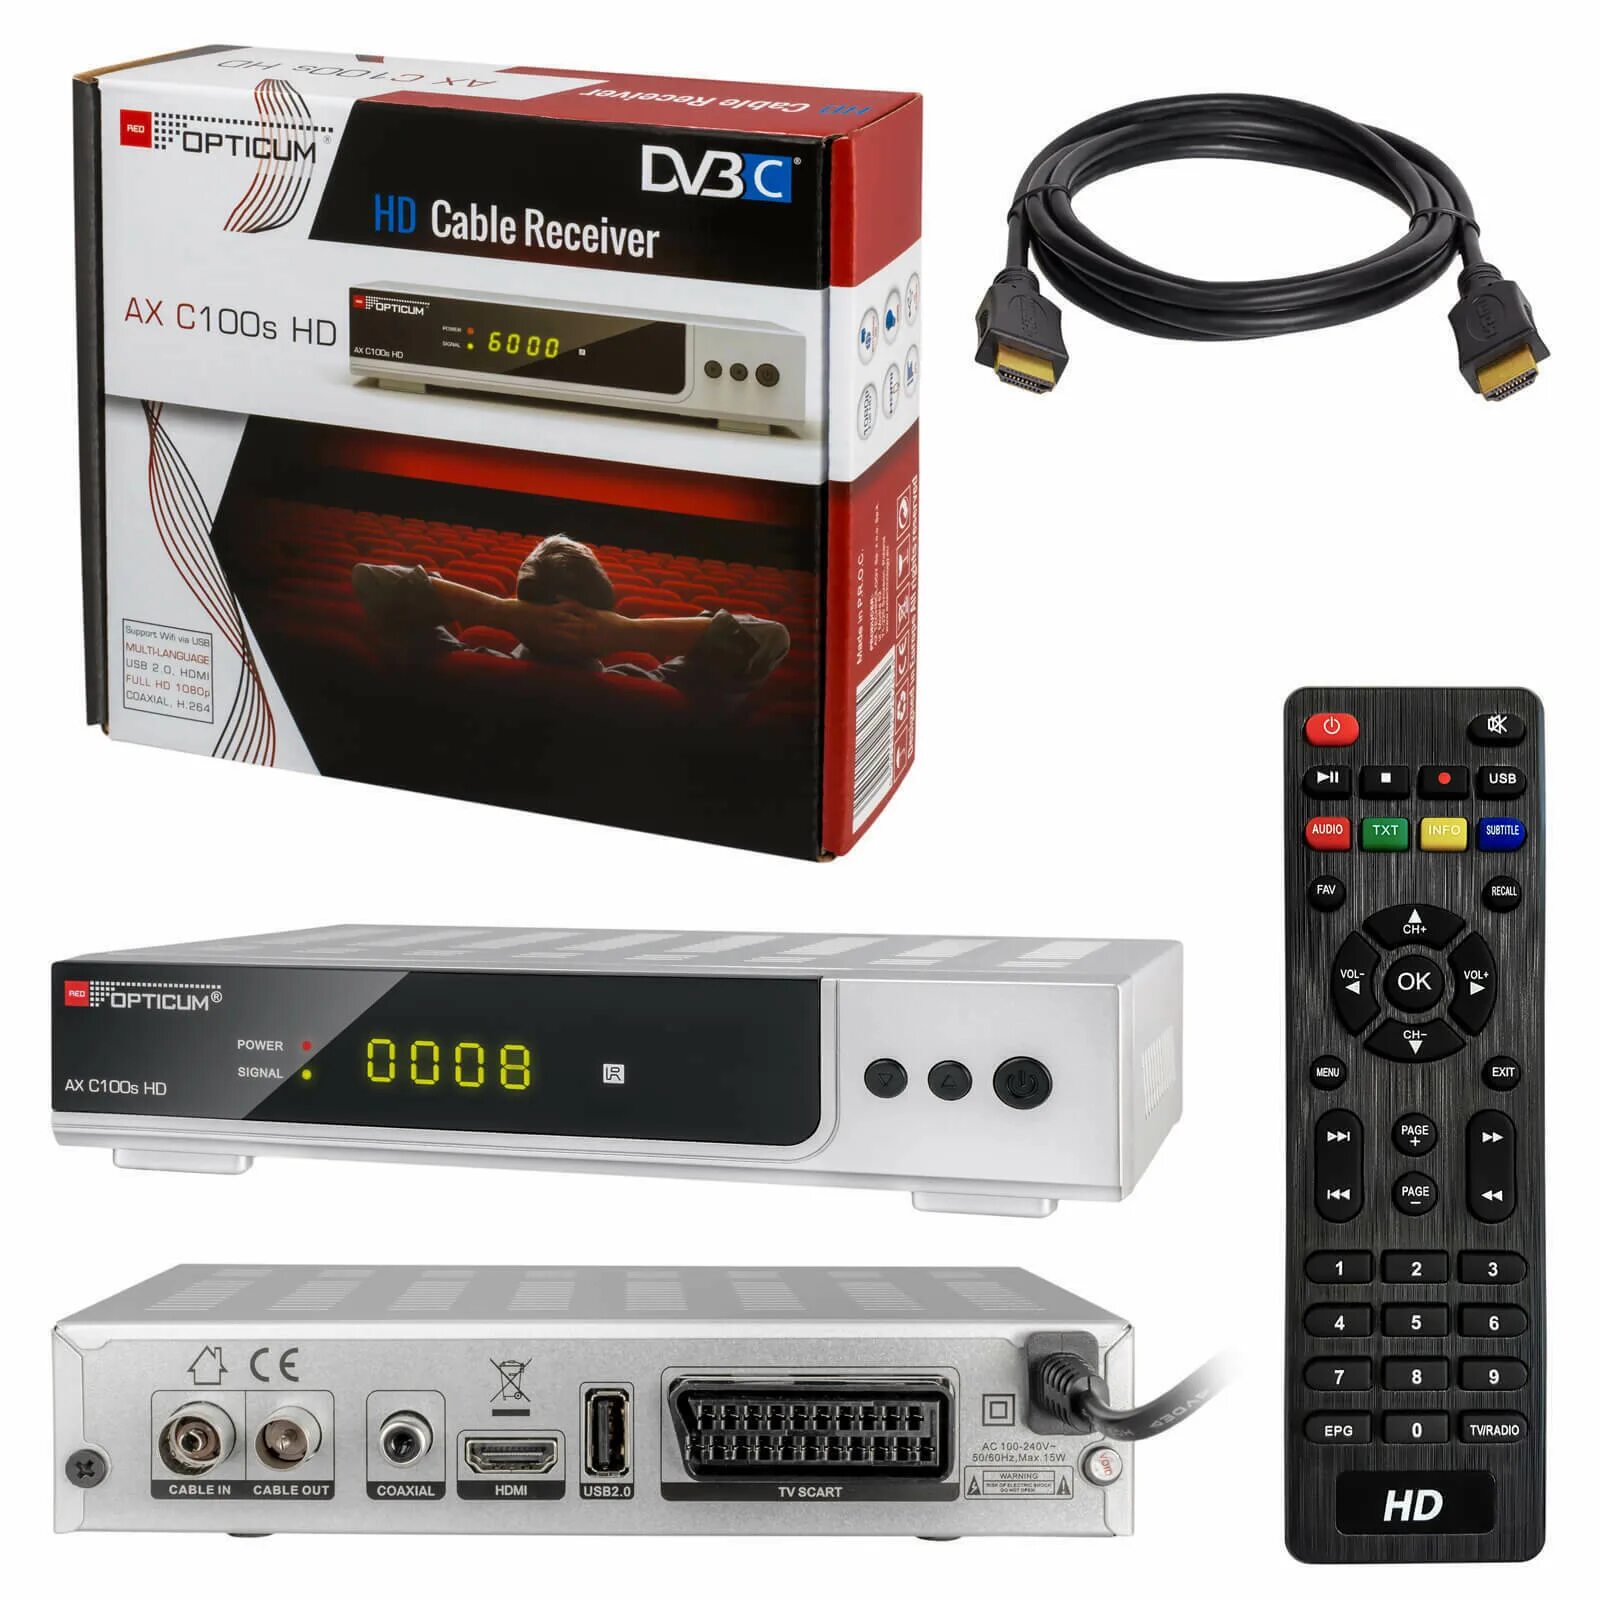 Кабельный тюнер DVB-C. Усилитель AX-c20u. Диджитал кабель ресивер. Приставка PVR.